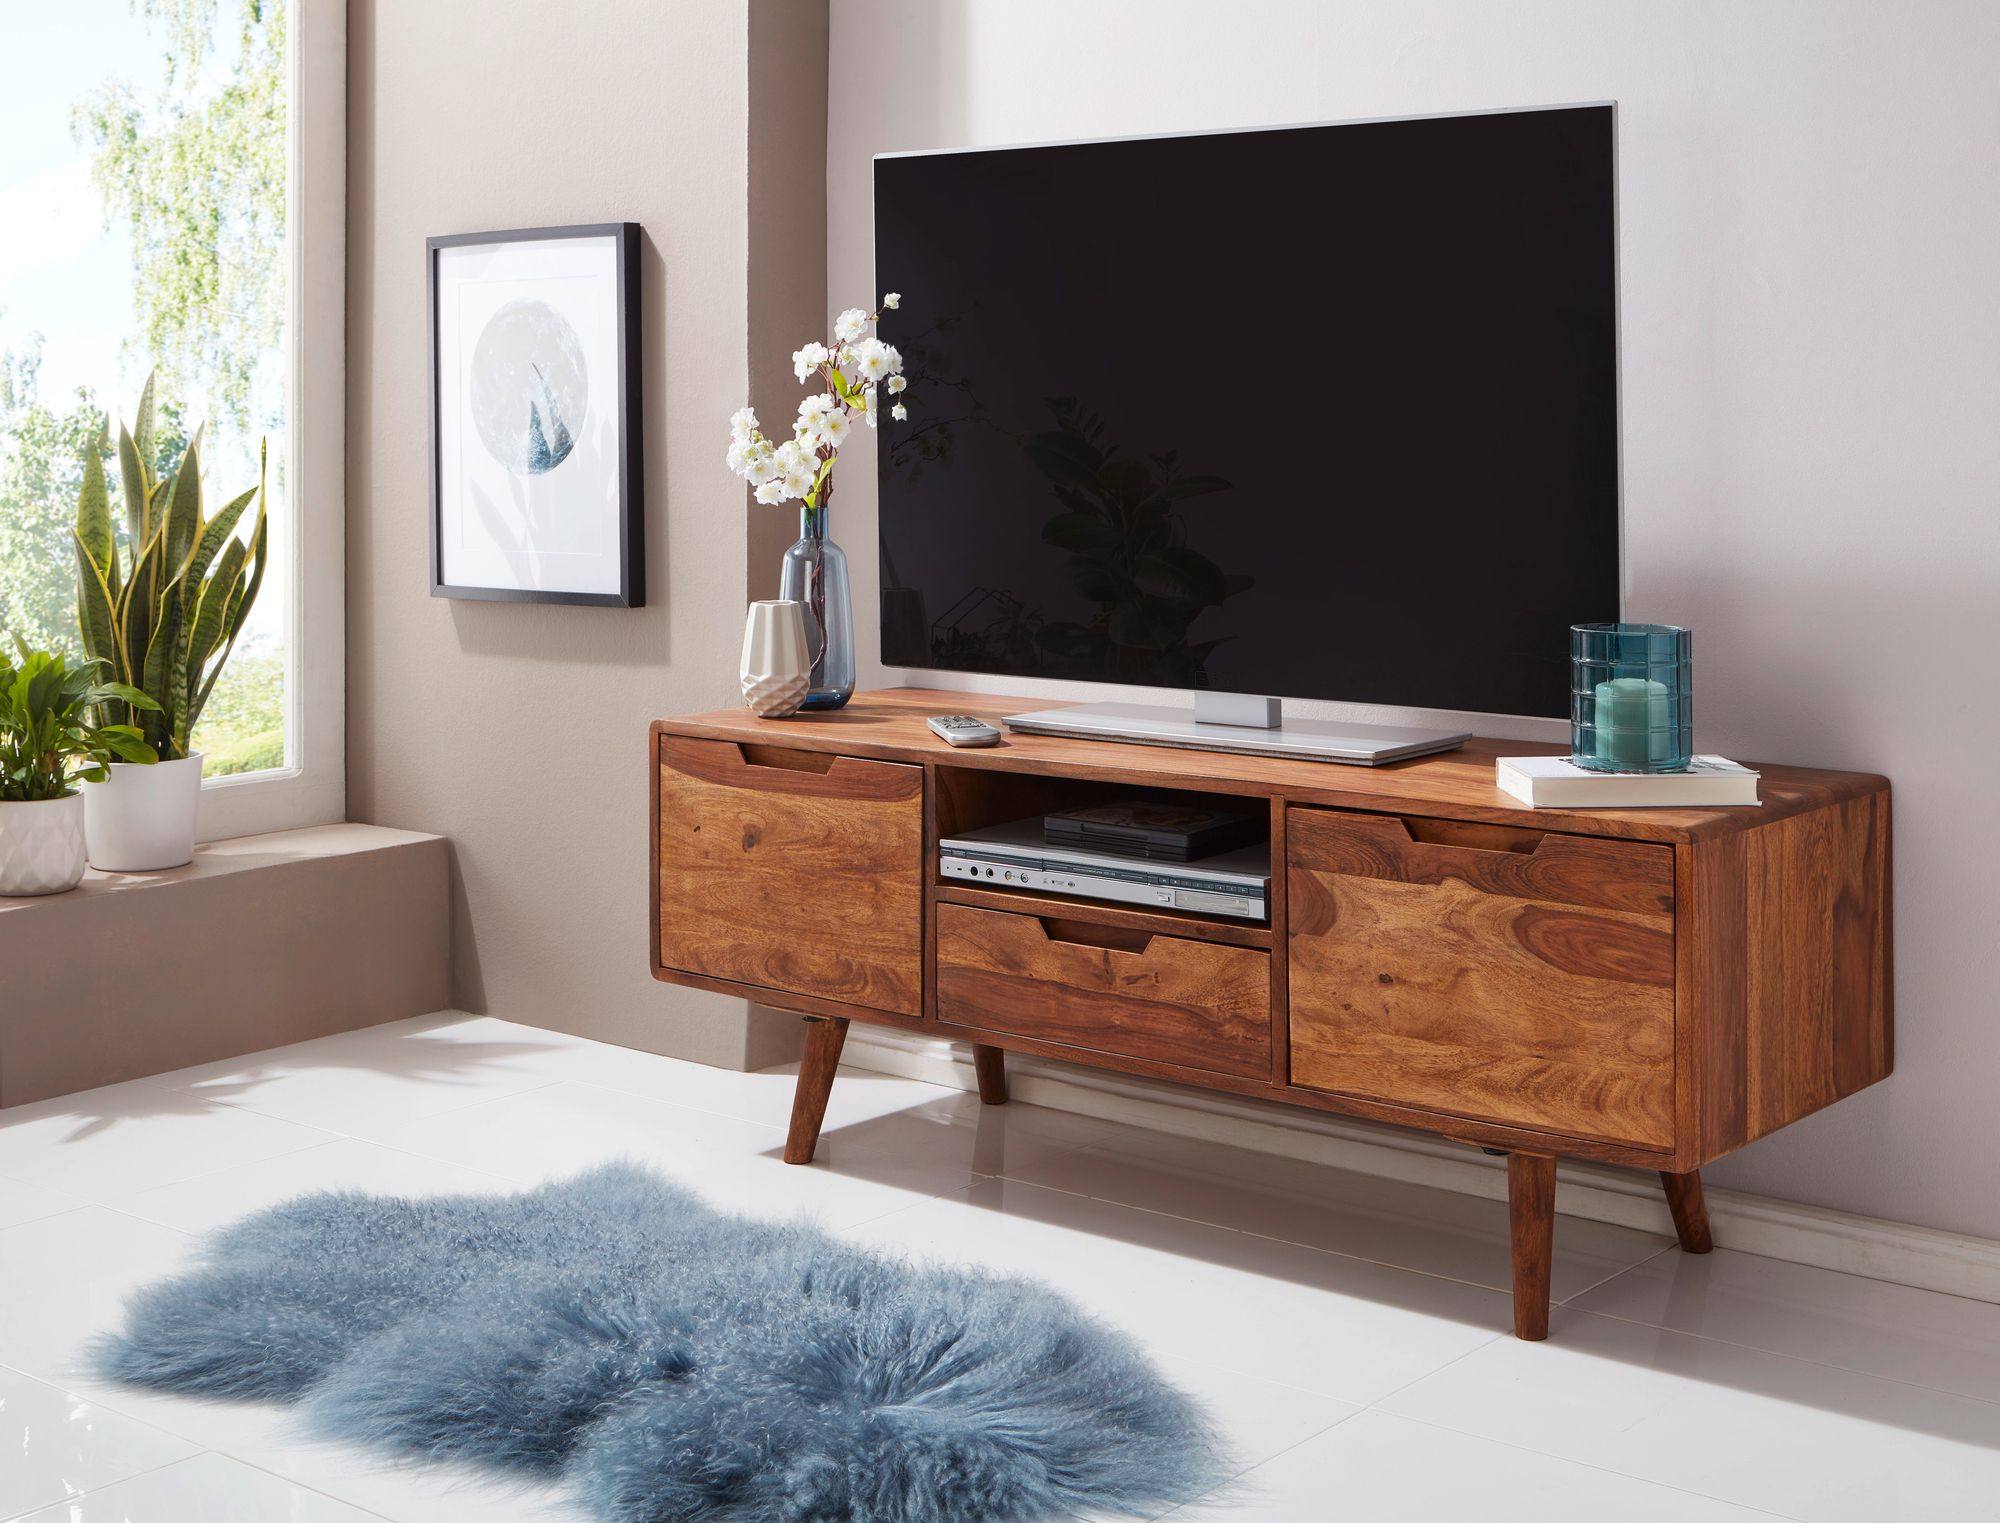 grens Geschiktheid Golf Betaalbaar modern luxe tv meubel kopen | Aktie Wonen.nl